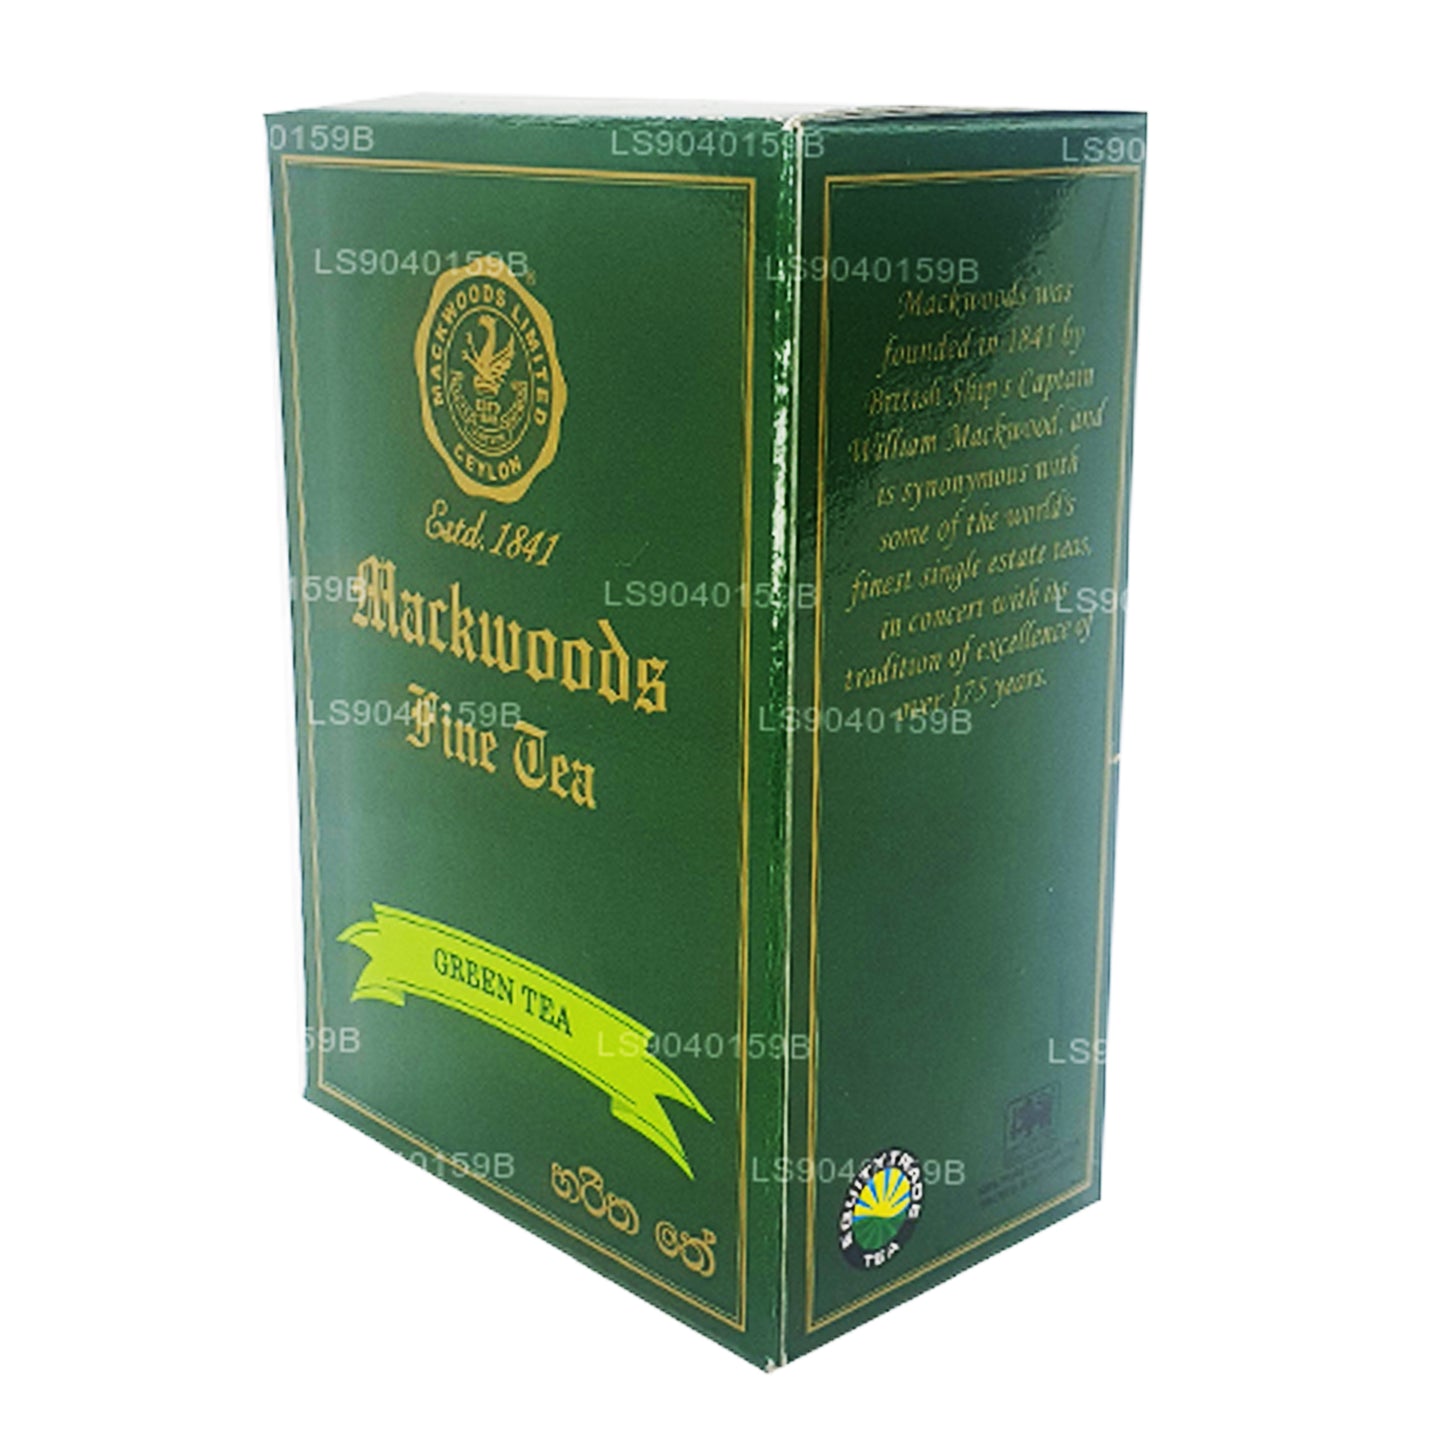 Mackwoods Gevşek Yaprak Yeşil Çay (100g)